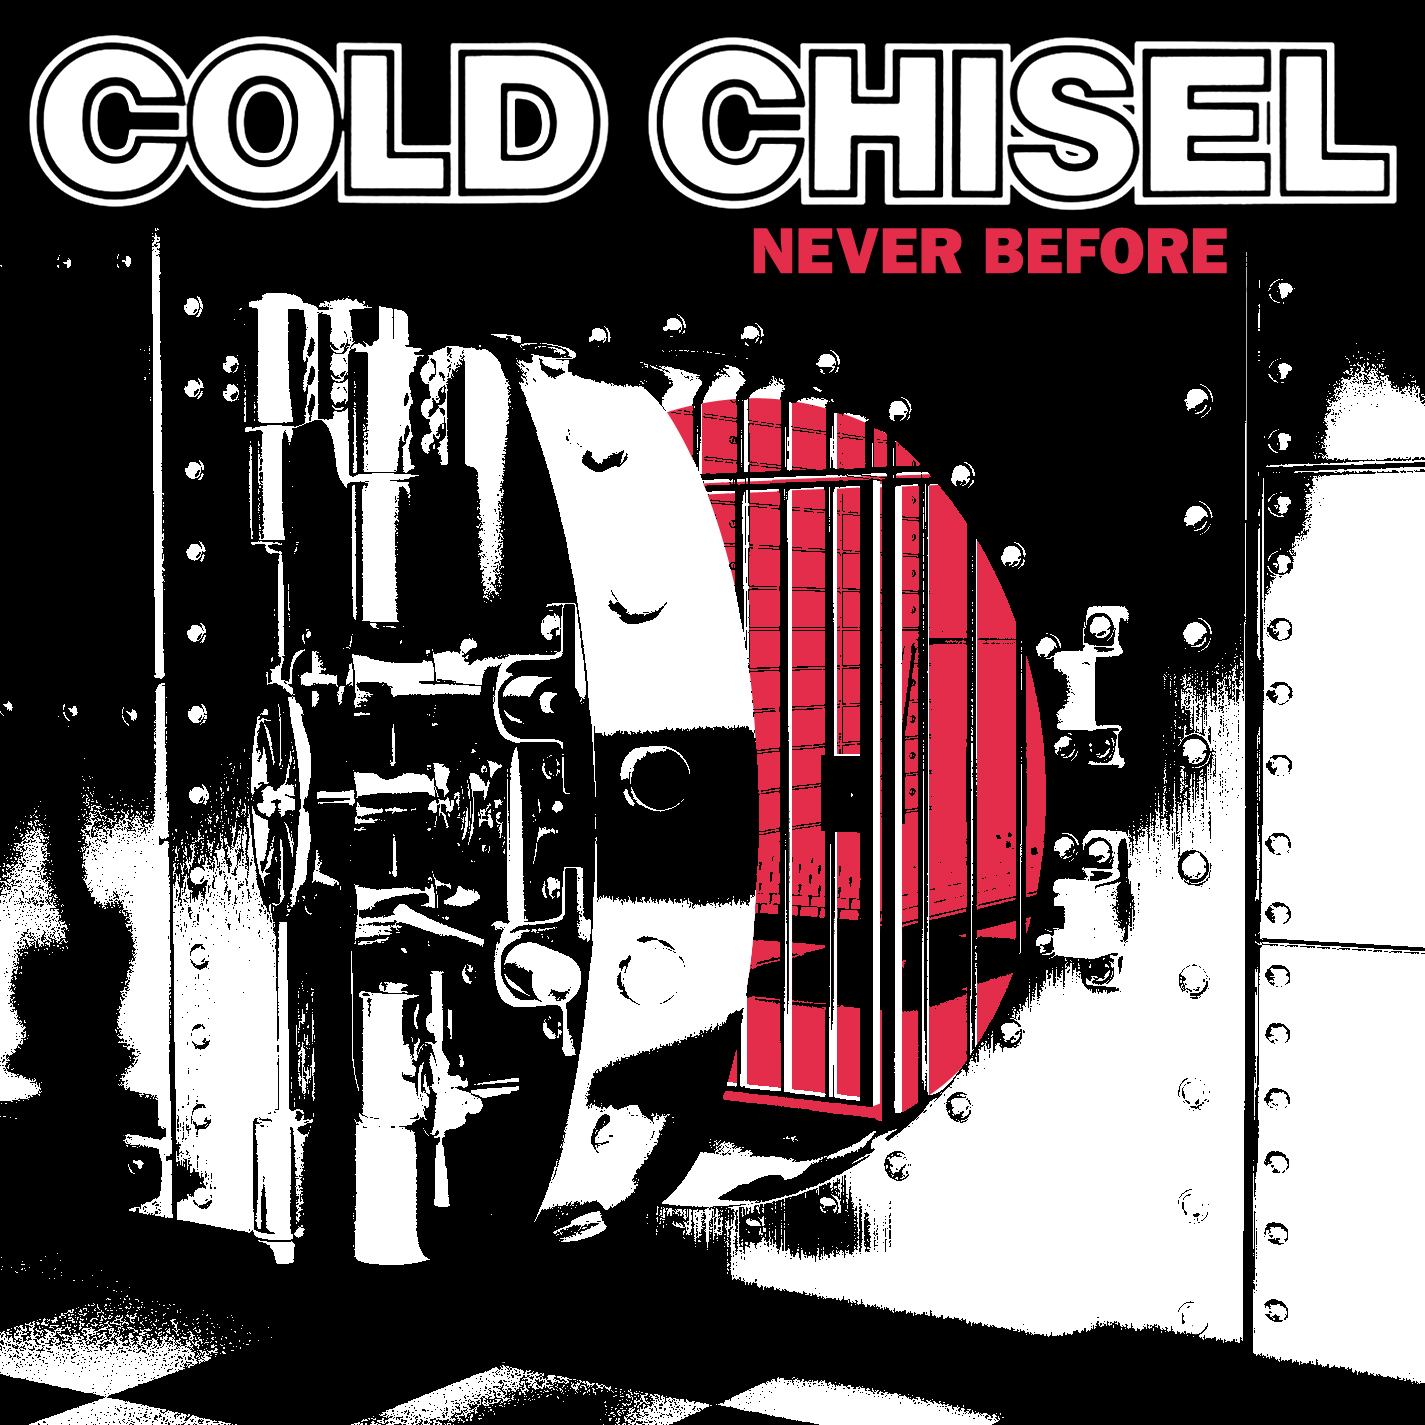 Cold chisel album 3 big xxx album cover